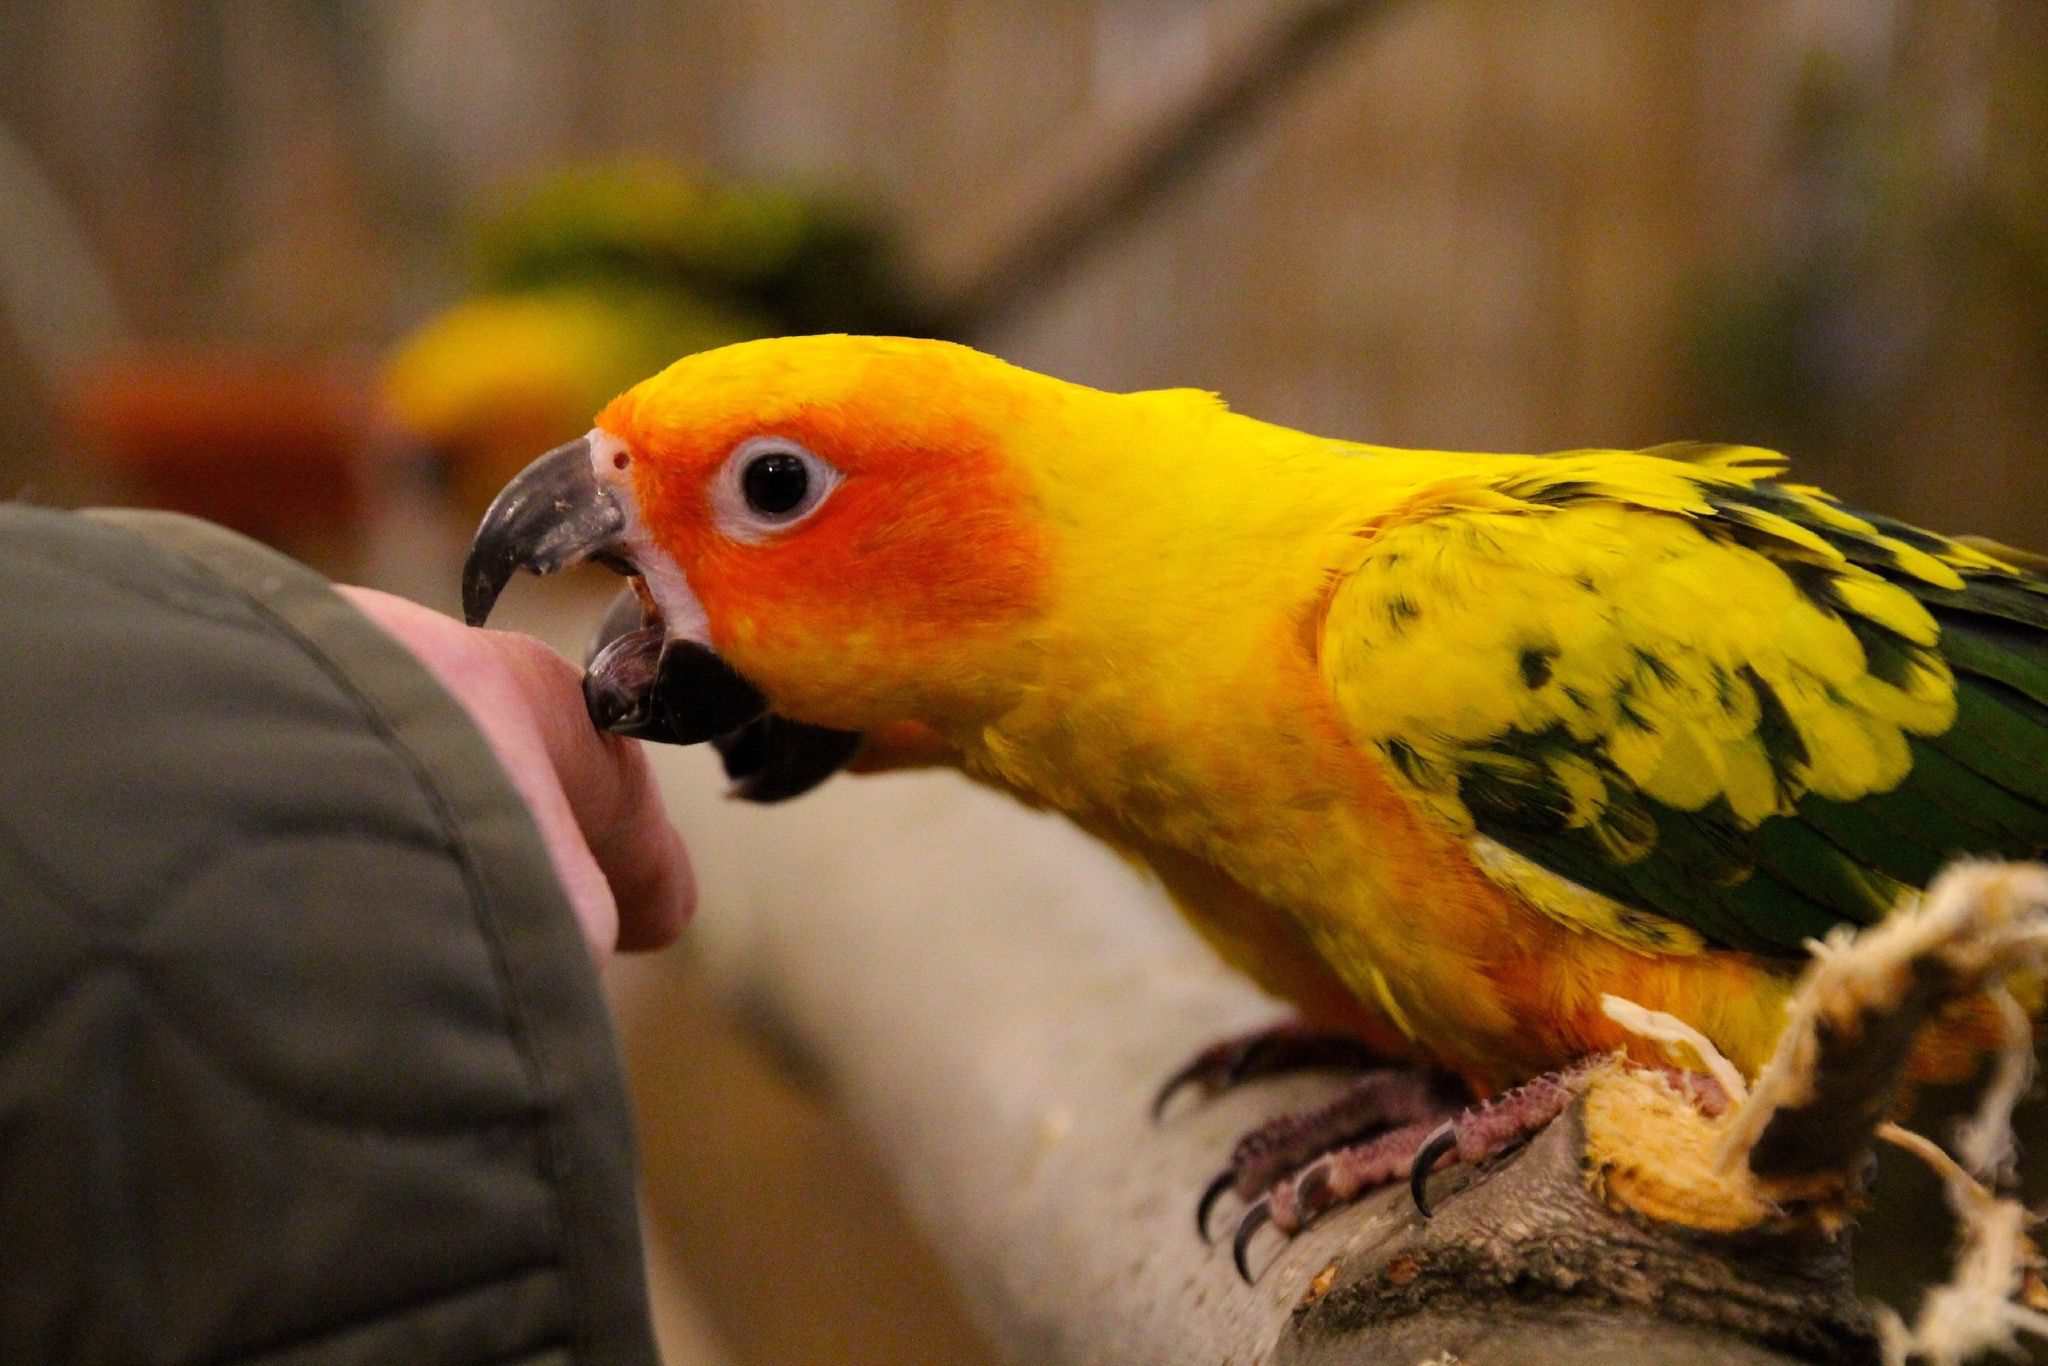 Parrot biting a finger